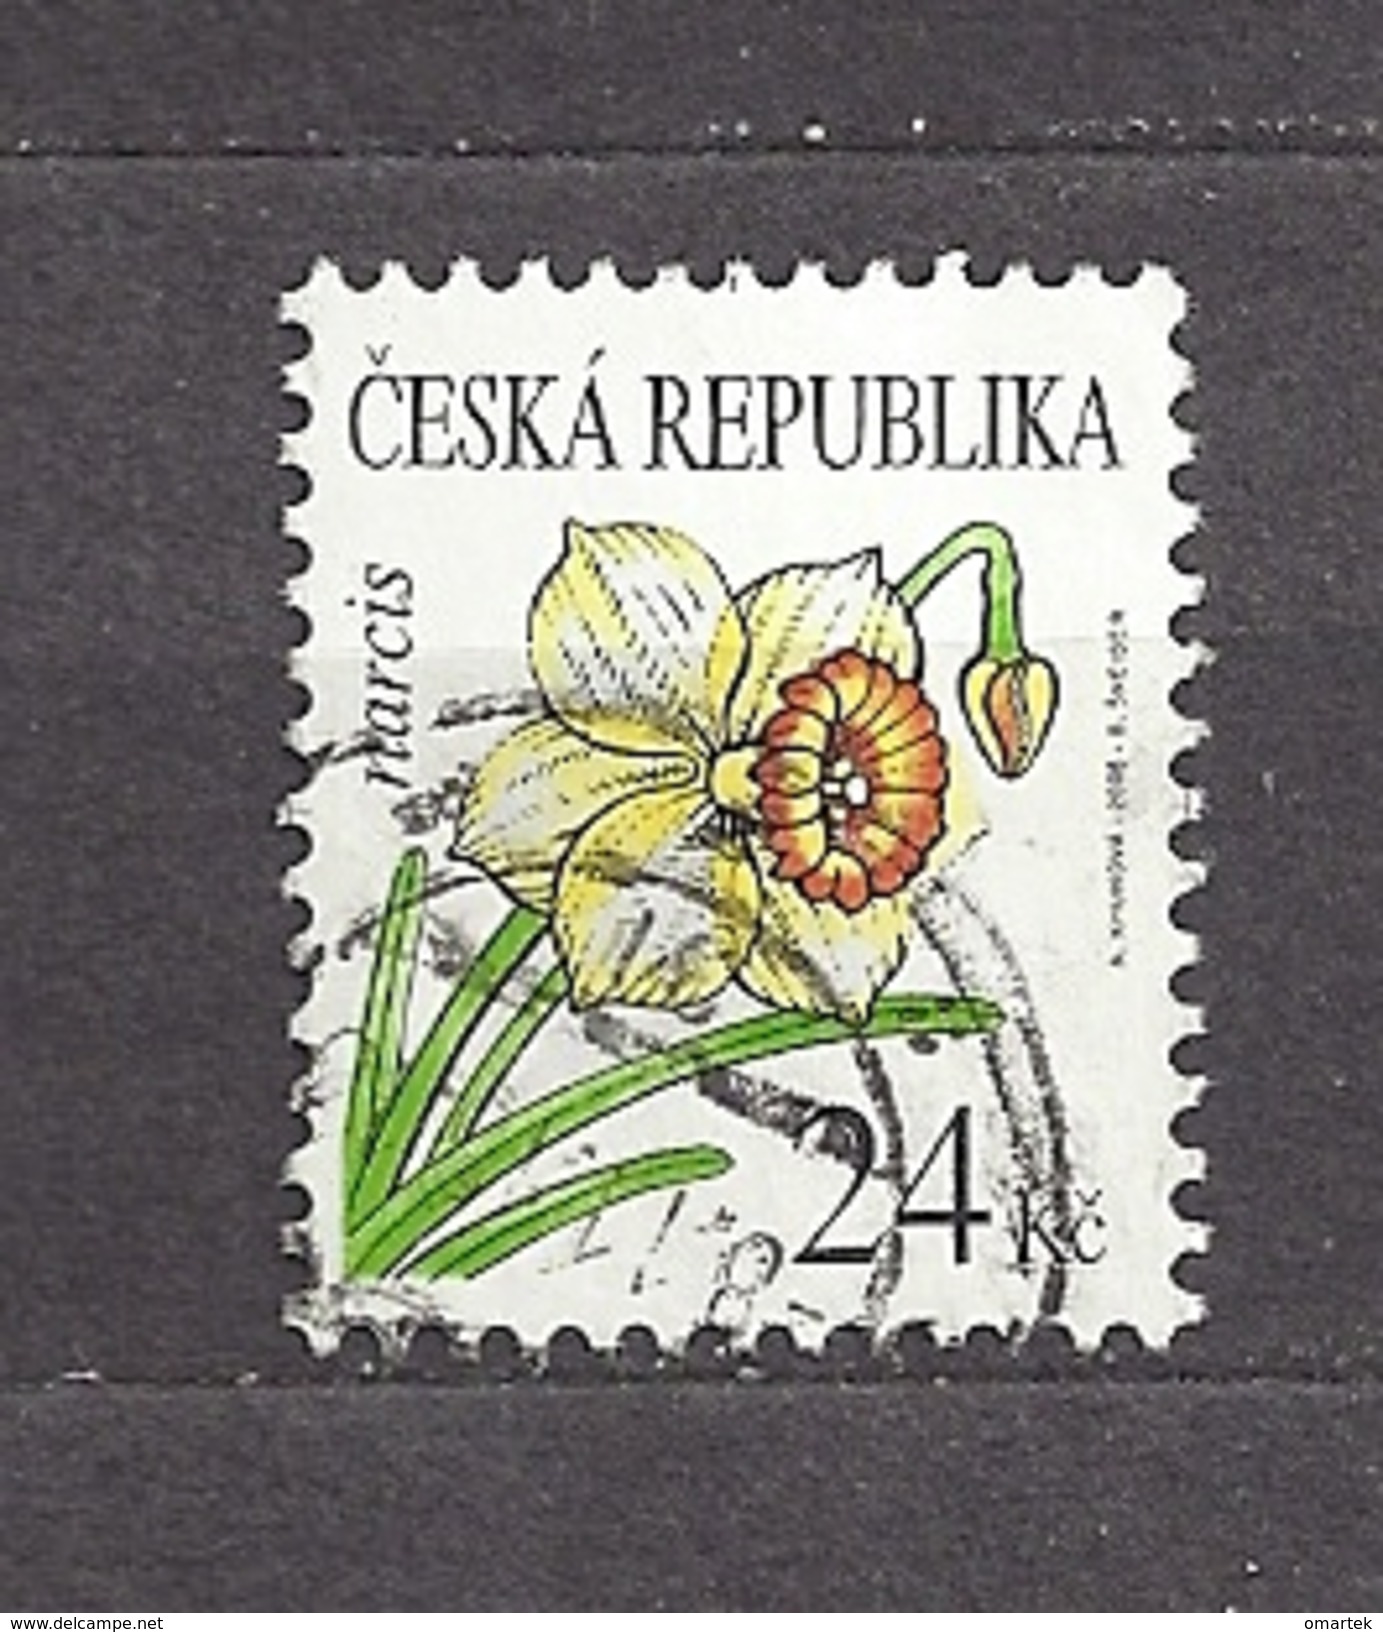 Czech Republic 2006 ⊙ Mi 463 Sc 3294 Flowers  Blumen  Daffodil. Tschechische Republik. C1 - Oblitérés